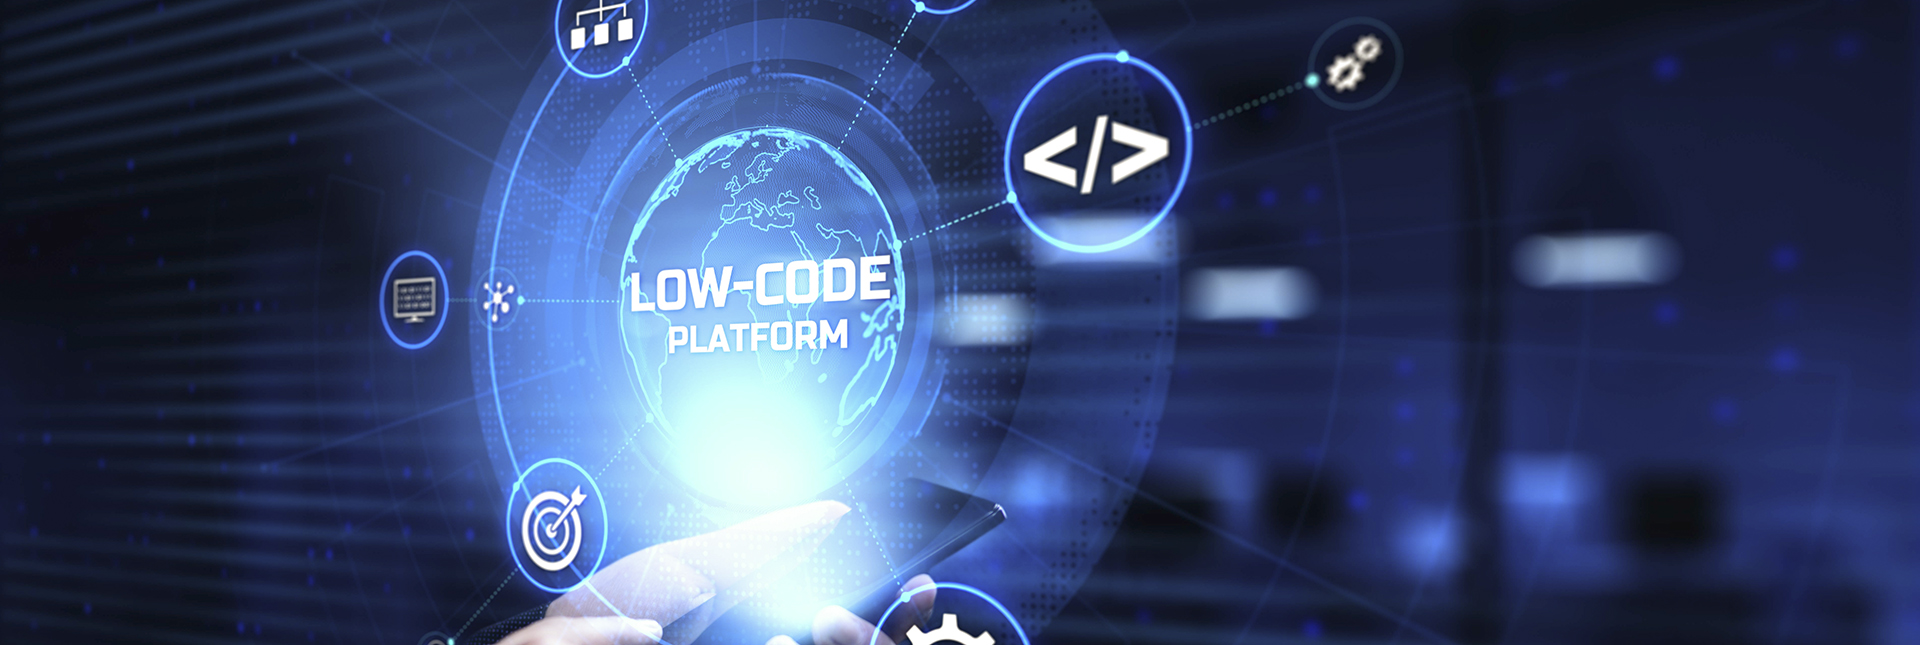 Low-code: Nền tảng công nghệ thúc đẩy chuyển đổi số ngành công nghiệp sản xuất